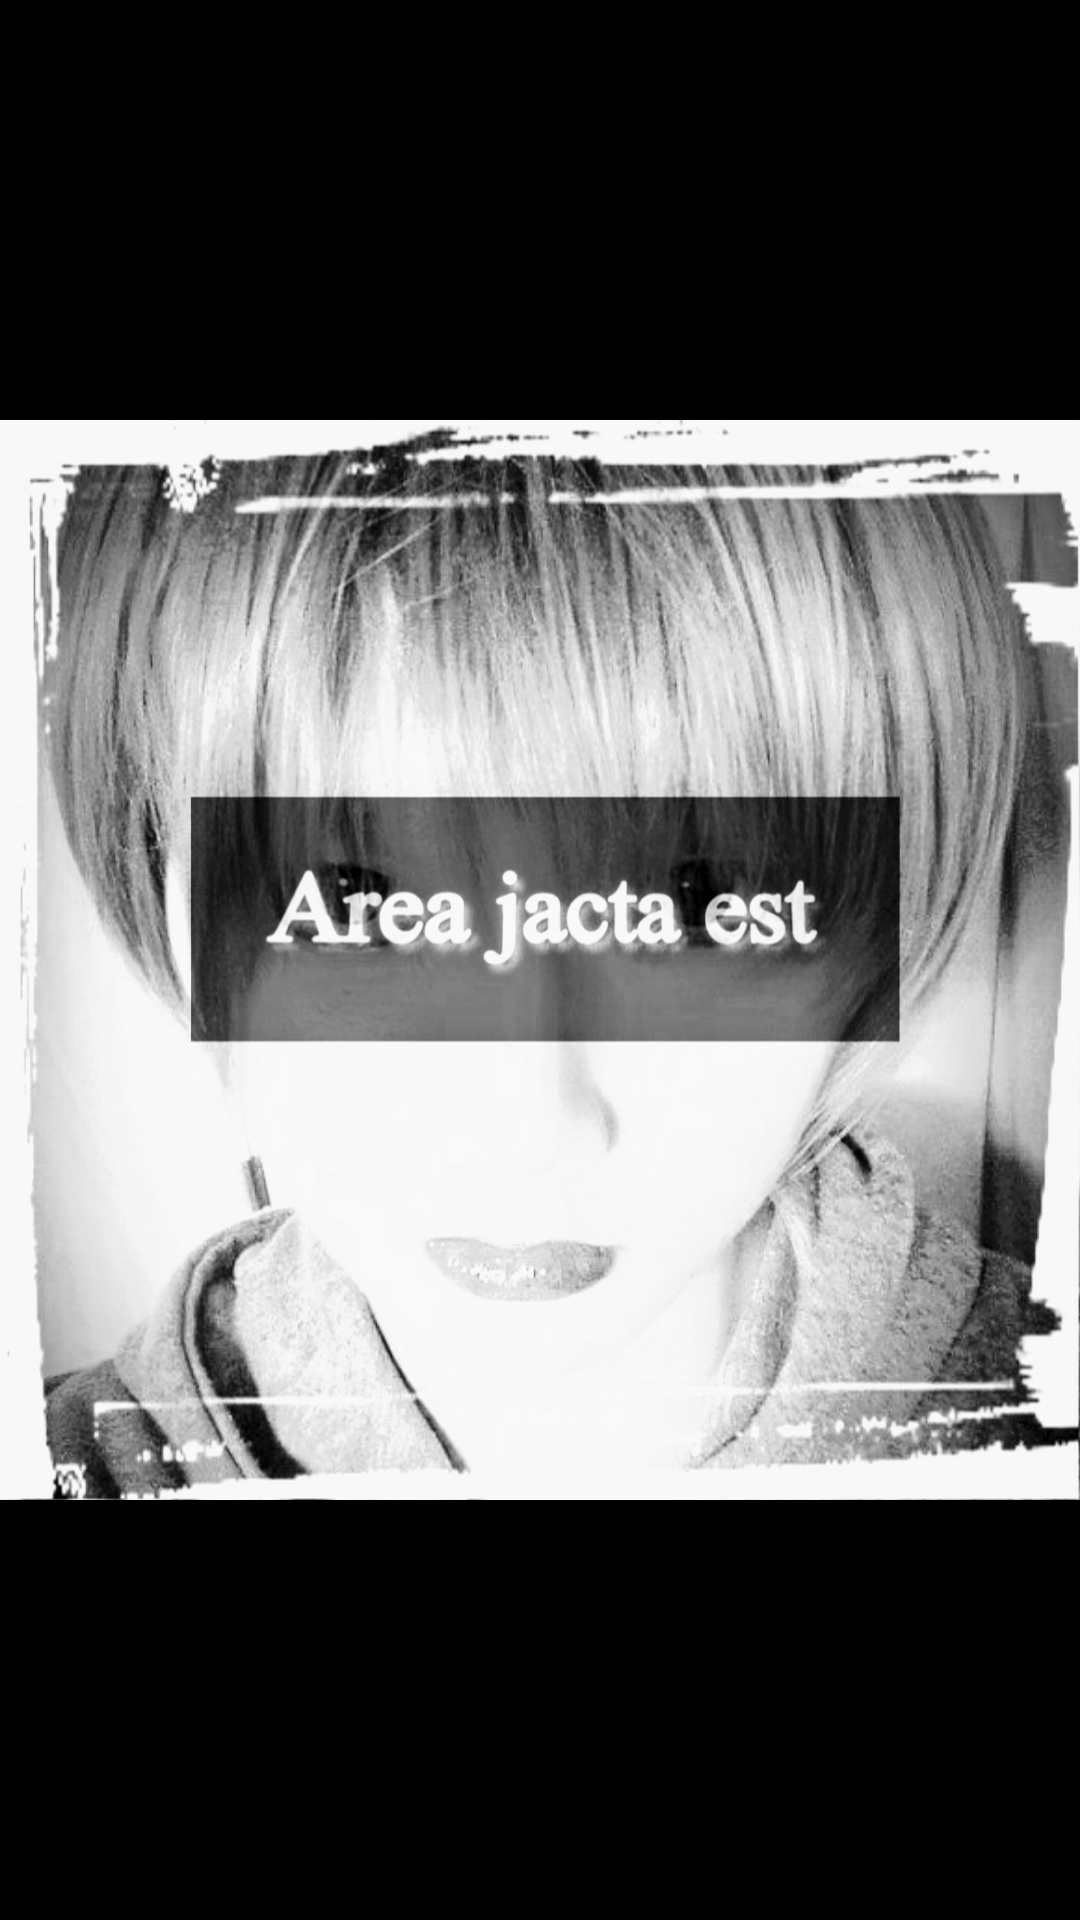 Area jacta est